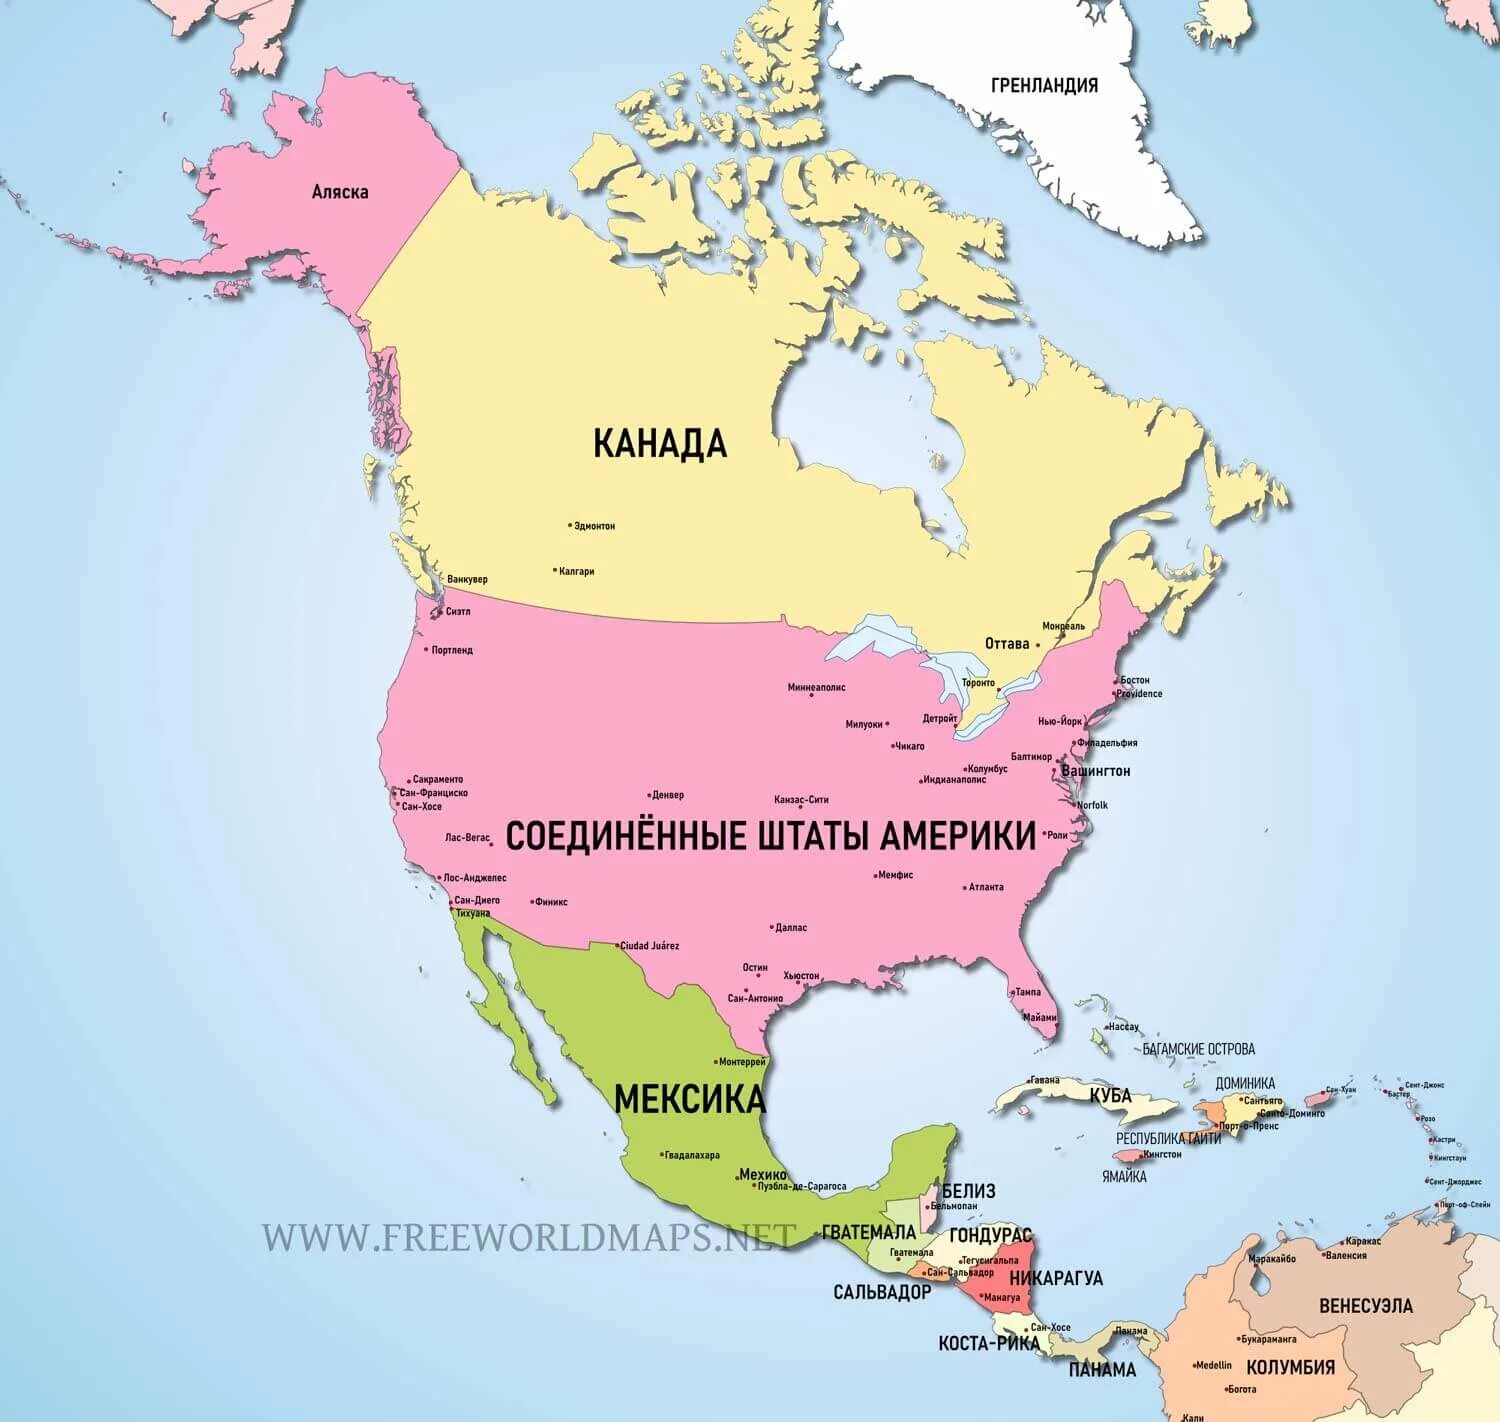 Большая часть северной америки говорит на языке. Карта Северной Америки со странами крупно на русском. Северная Америка на карте со странами и столицами на русском языке. Карта стран Северной Америки на русском языке. Северная Америка карта со странами на русском языке крупно.